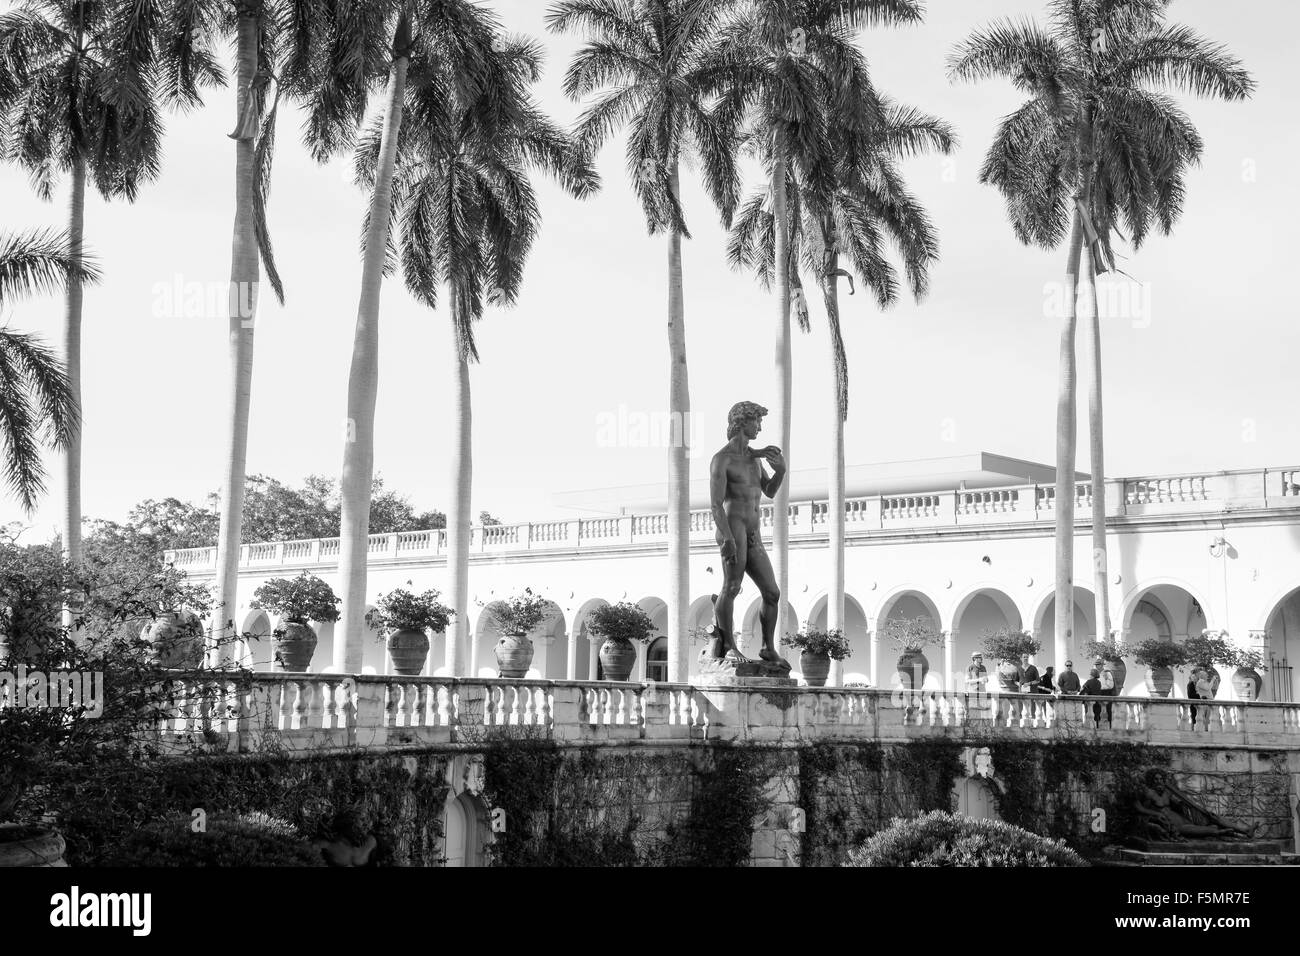 Immagine in bianco e nero di palme e giardini con una replica del David di Michelangelo presso la suoneria Art Museum, Sarasota, FL Foto Stock